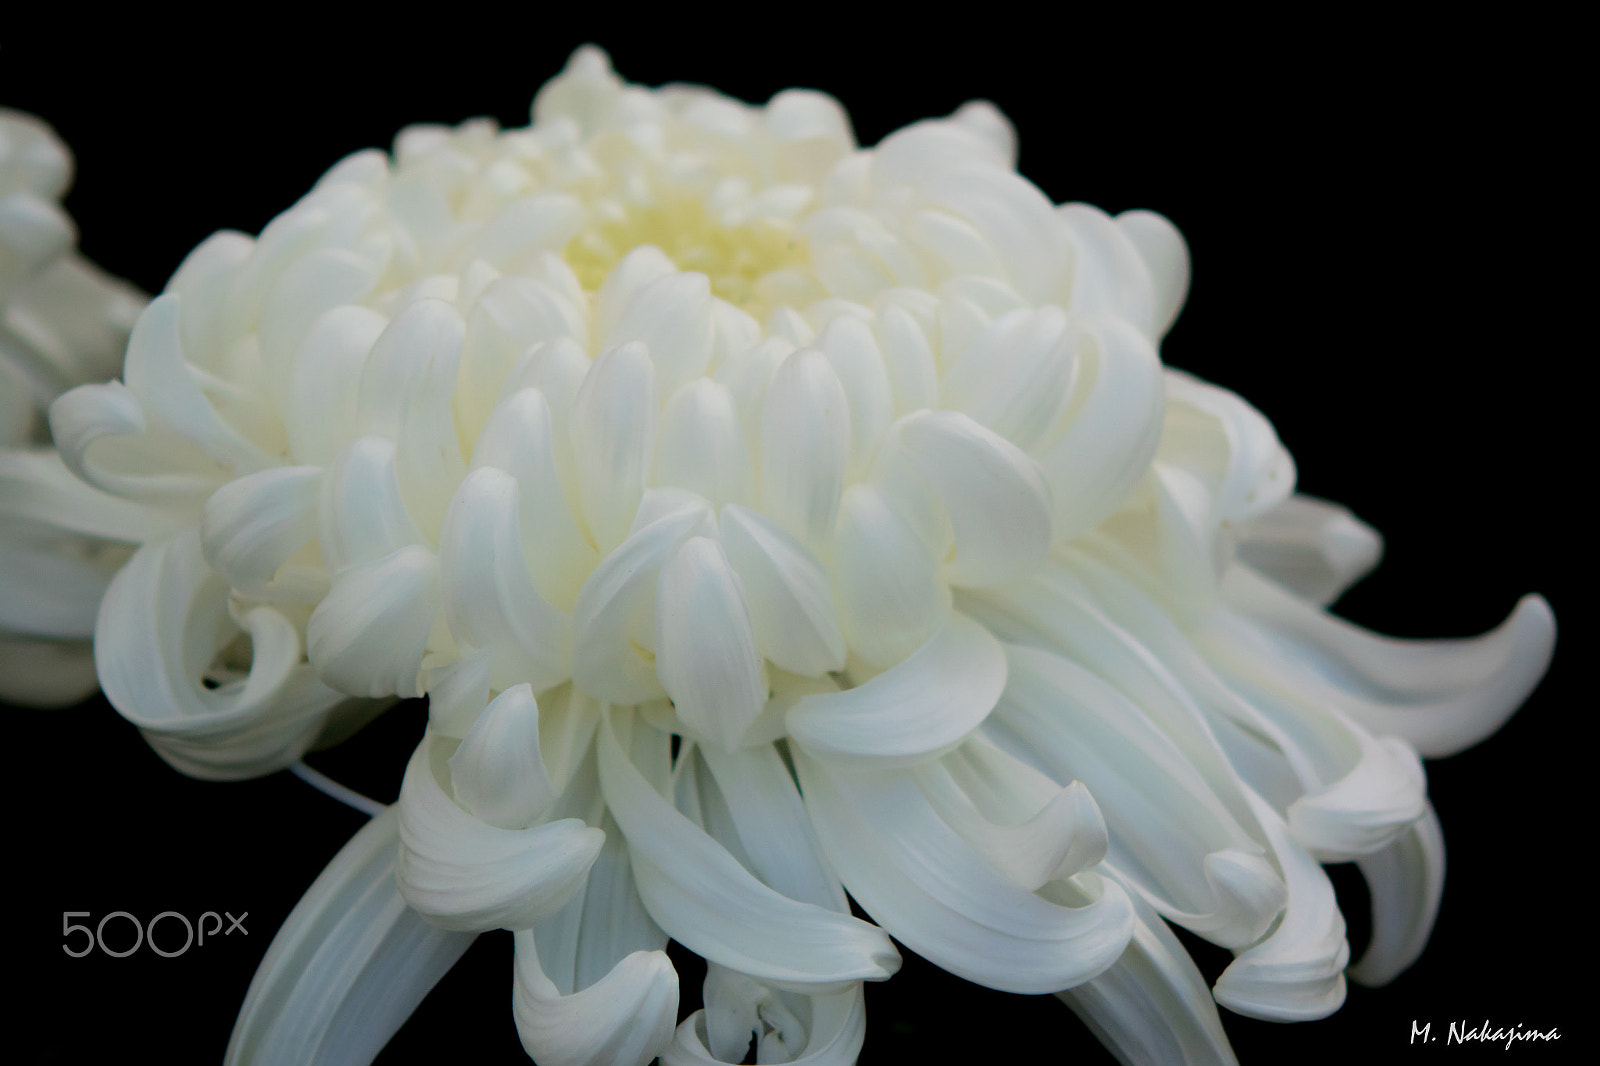 Nikon 1 V3 + 60mm f/2.8G sample photo. Chrysanthemum -2 photography